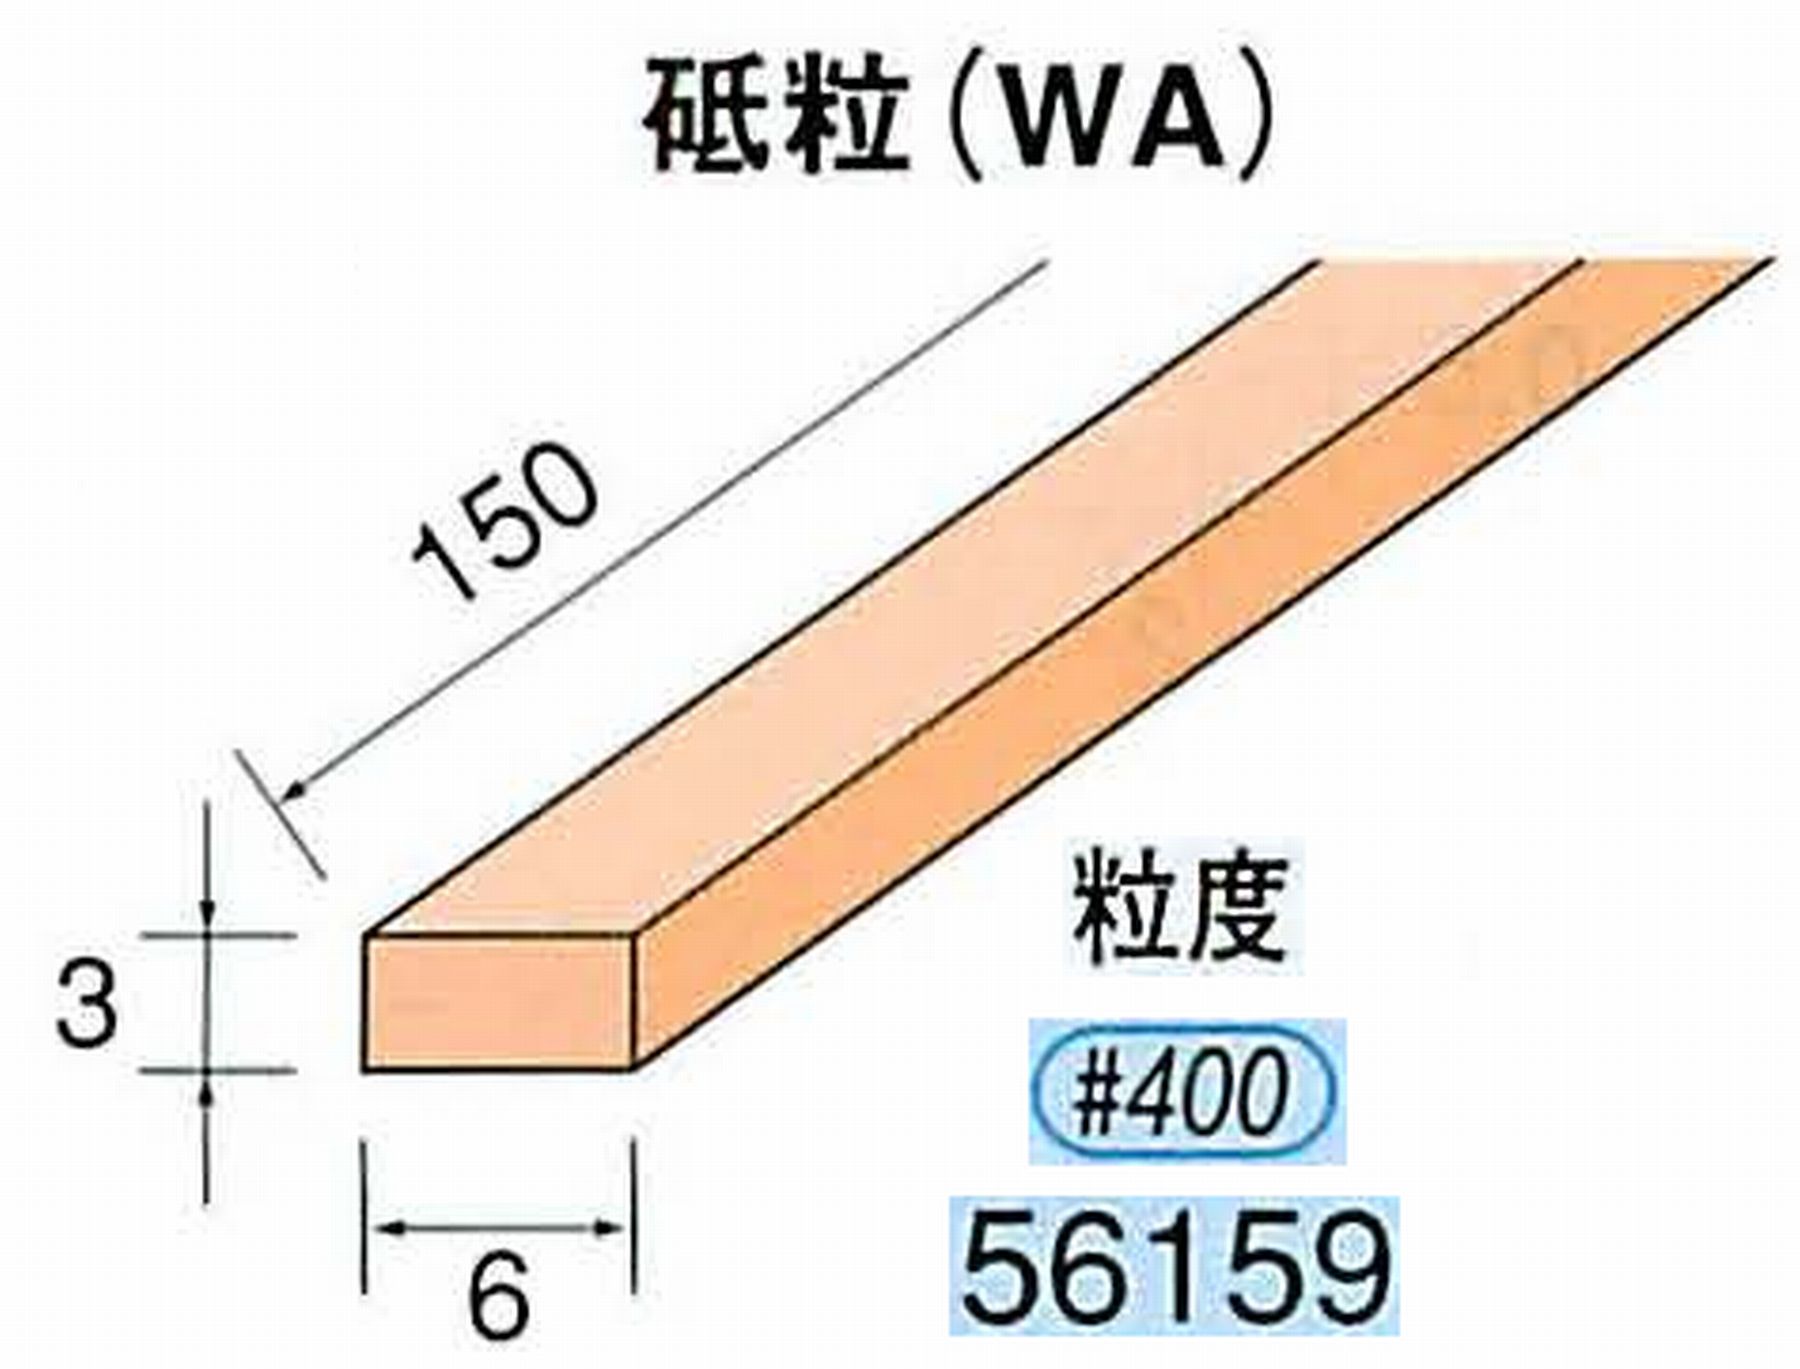 ナカニシ/NAKANISHI スティック砥石 スタンダードシリーズ 砥粒(WA) 56159